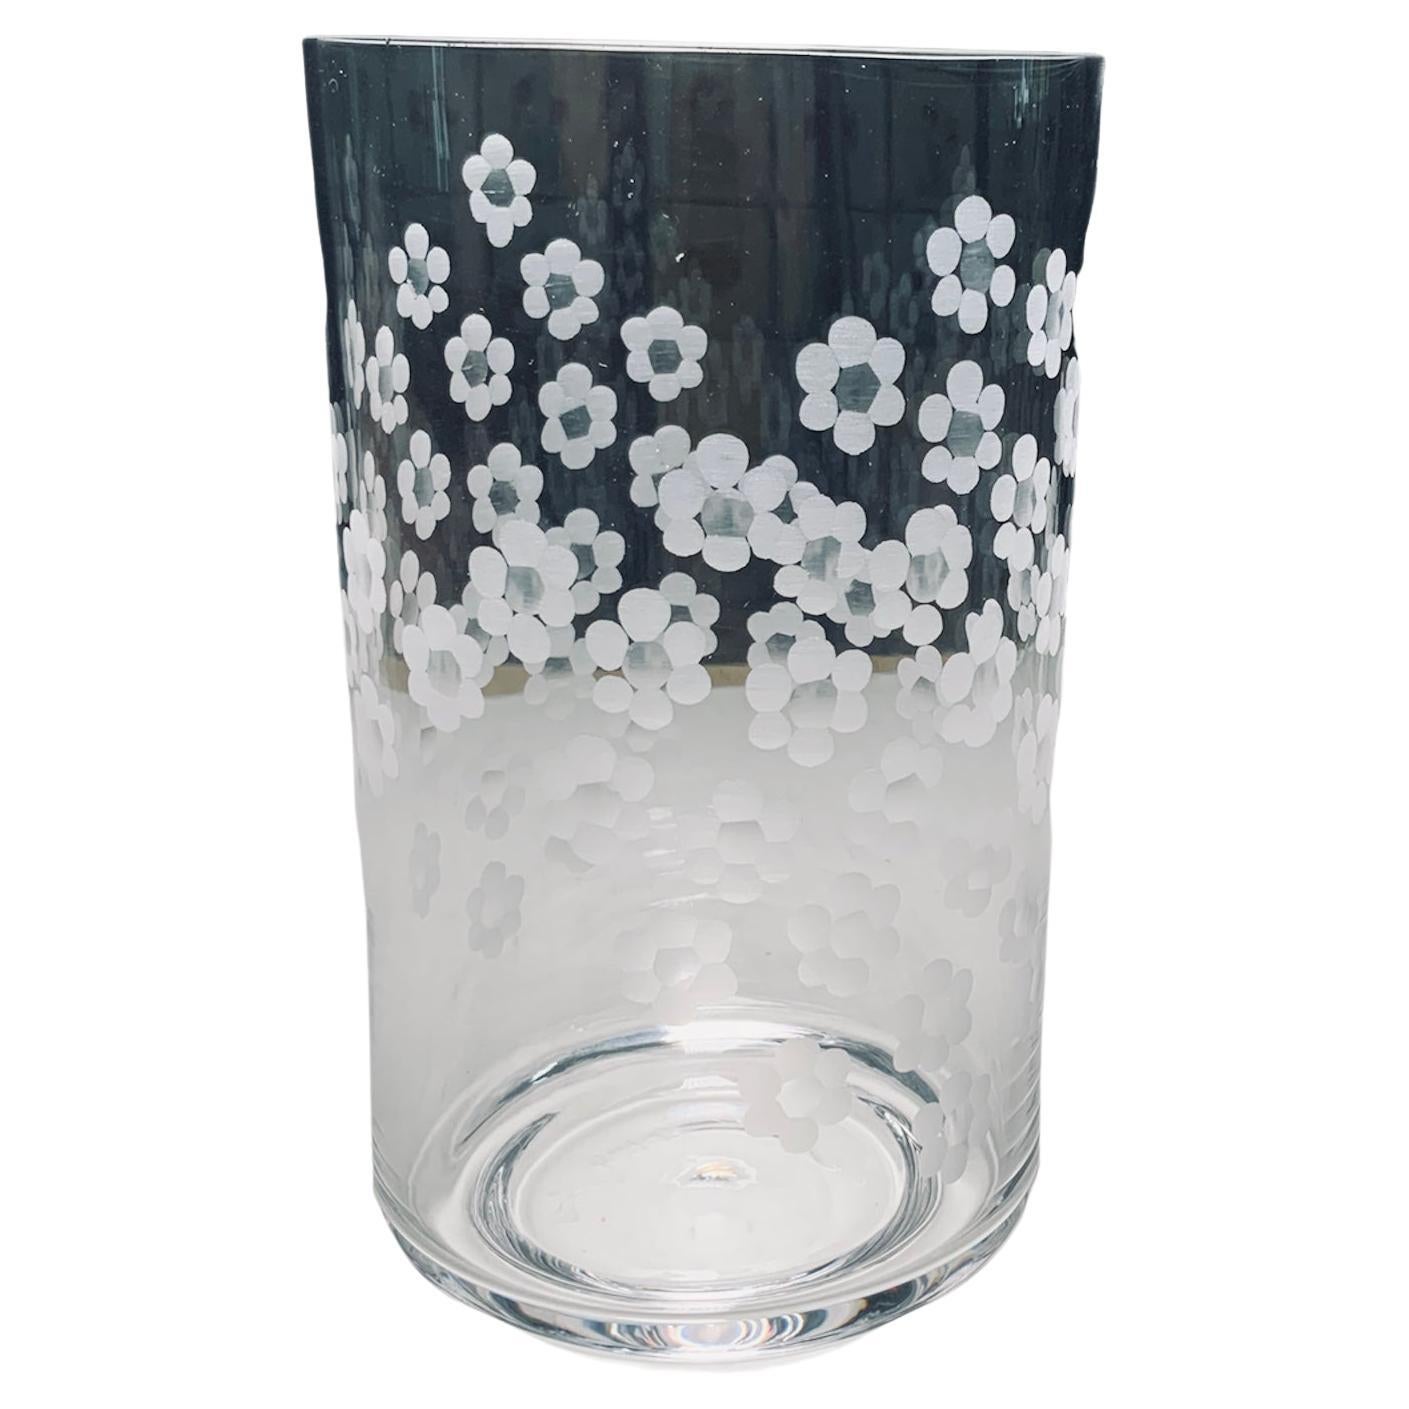 Zylindrische Blumenvase aus geätztem klarem Kristall